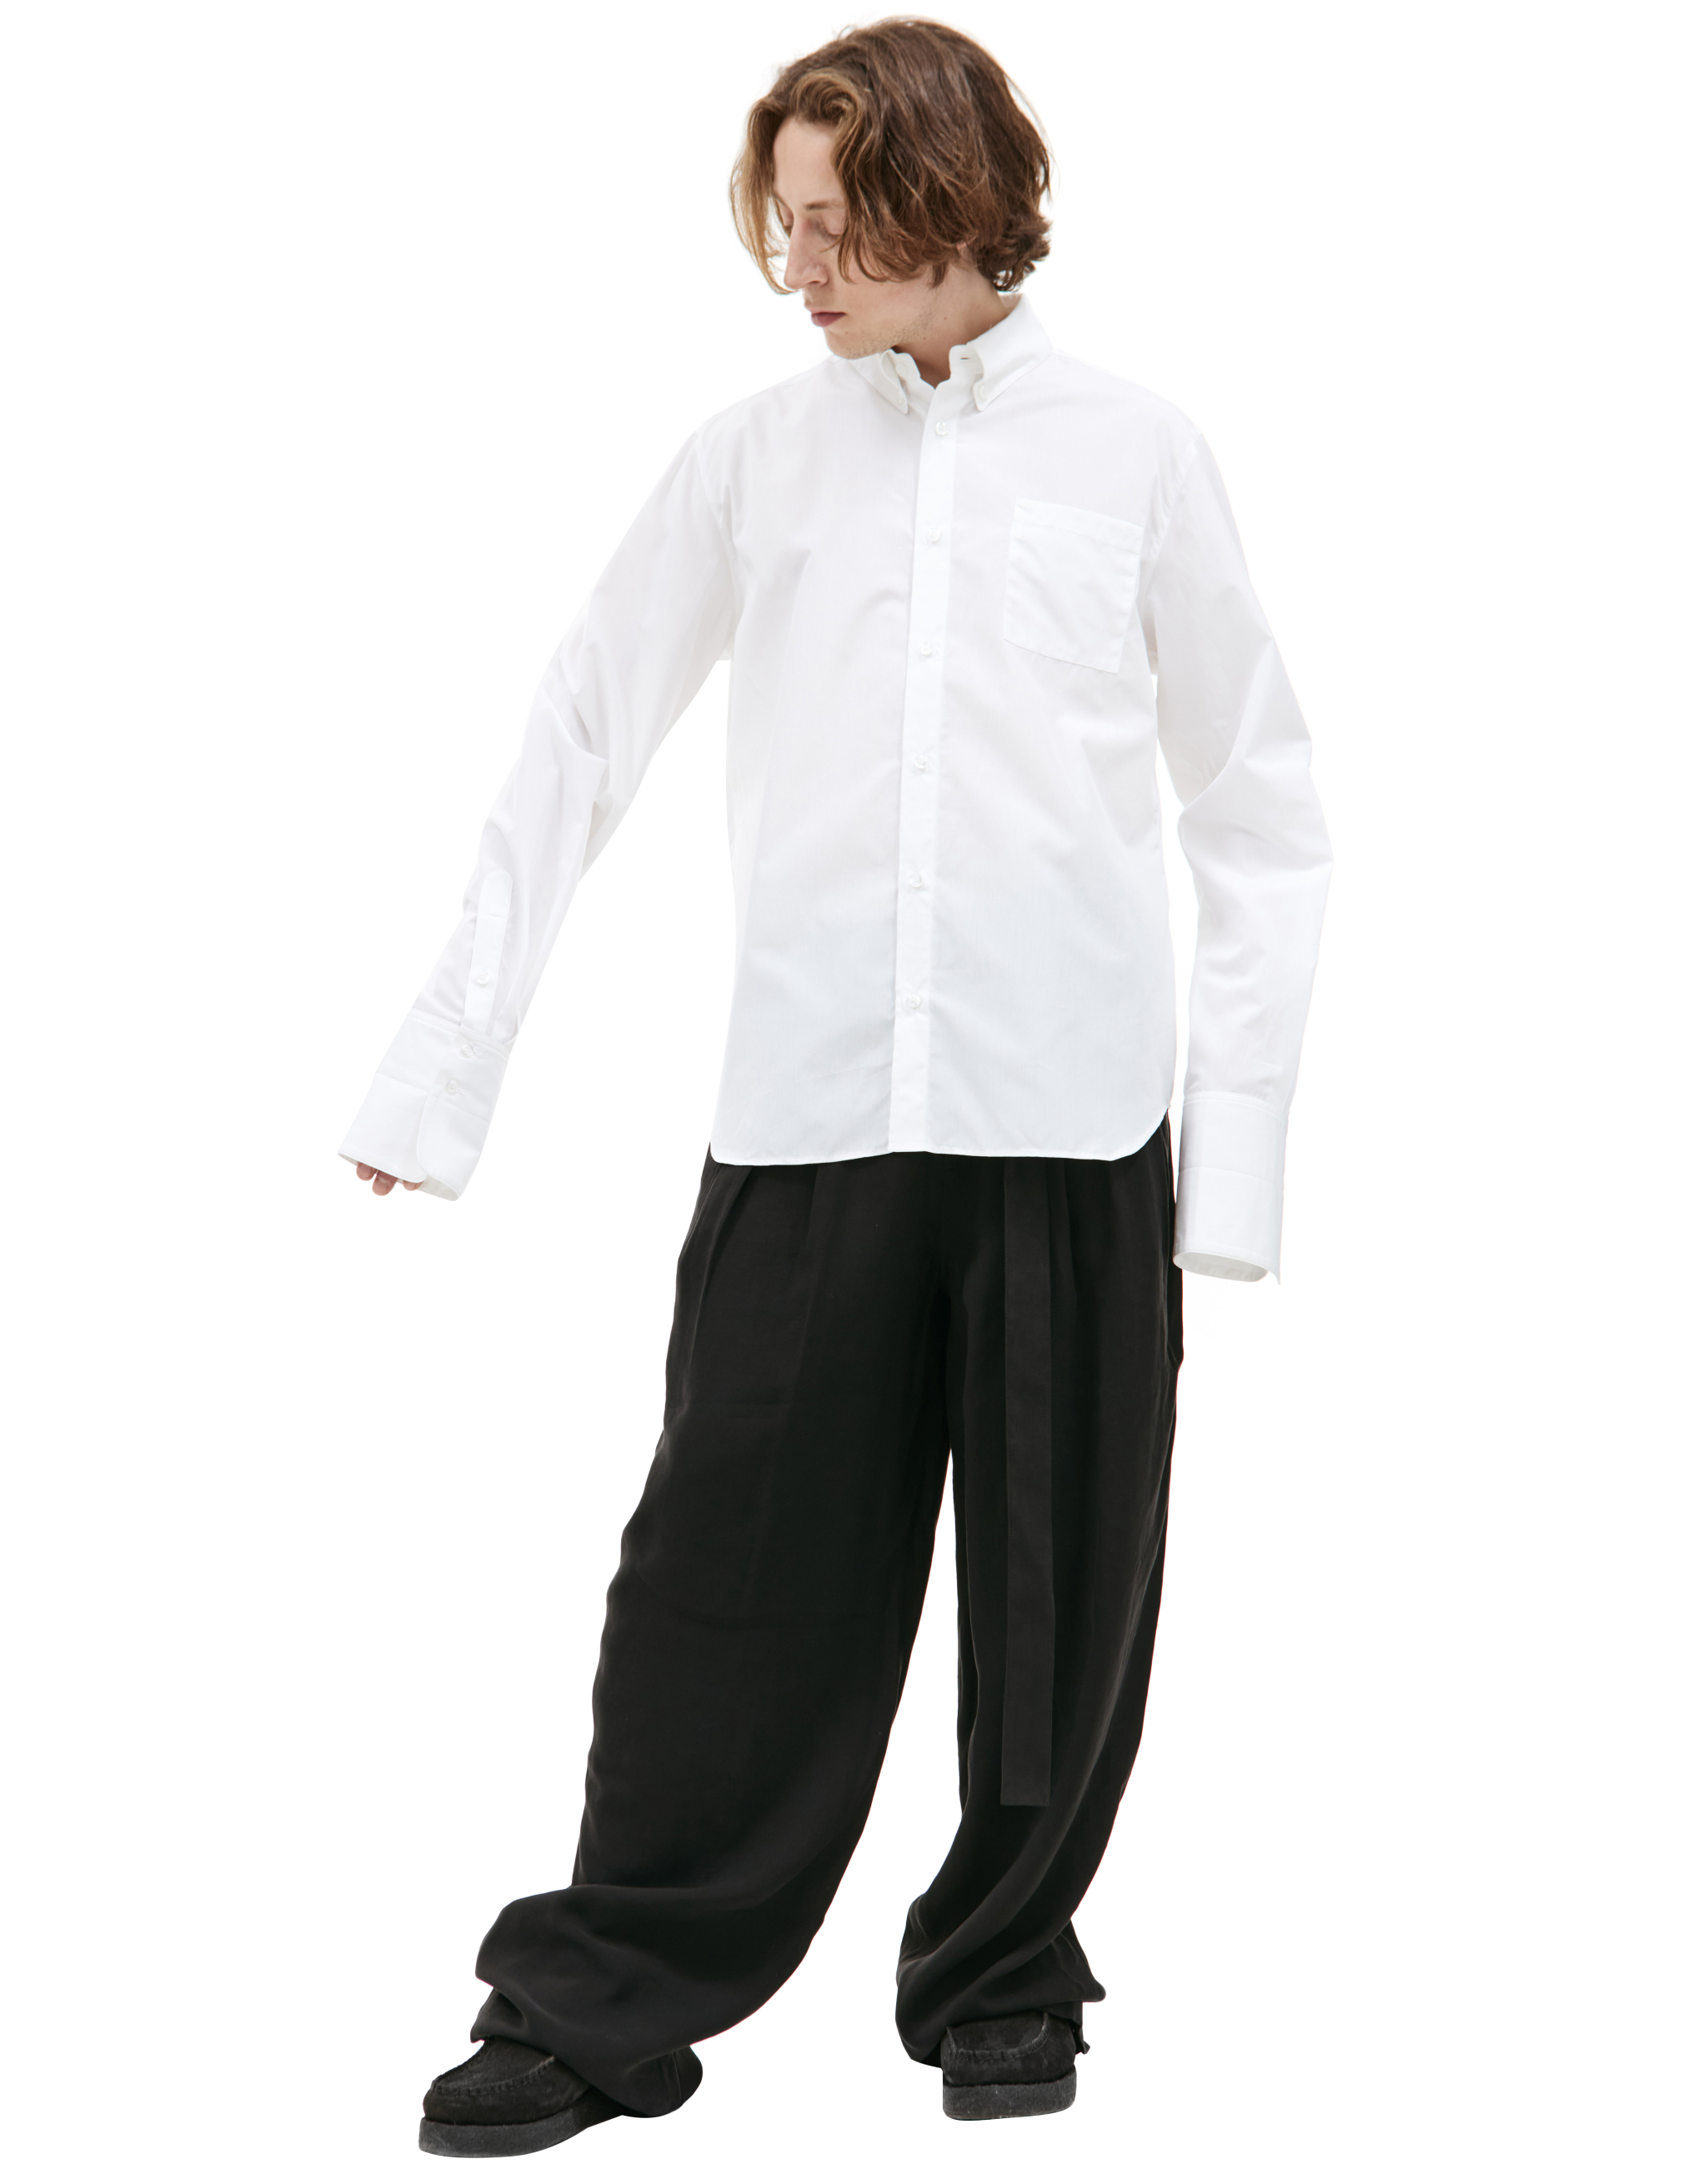 Белая рубашка с накладным карманом LOUIS GABRIEL NOUCHI 0554/T718/002, размер L;XL